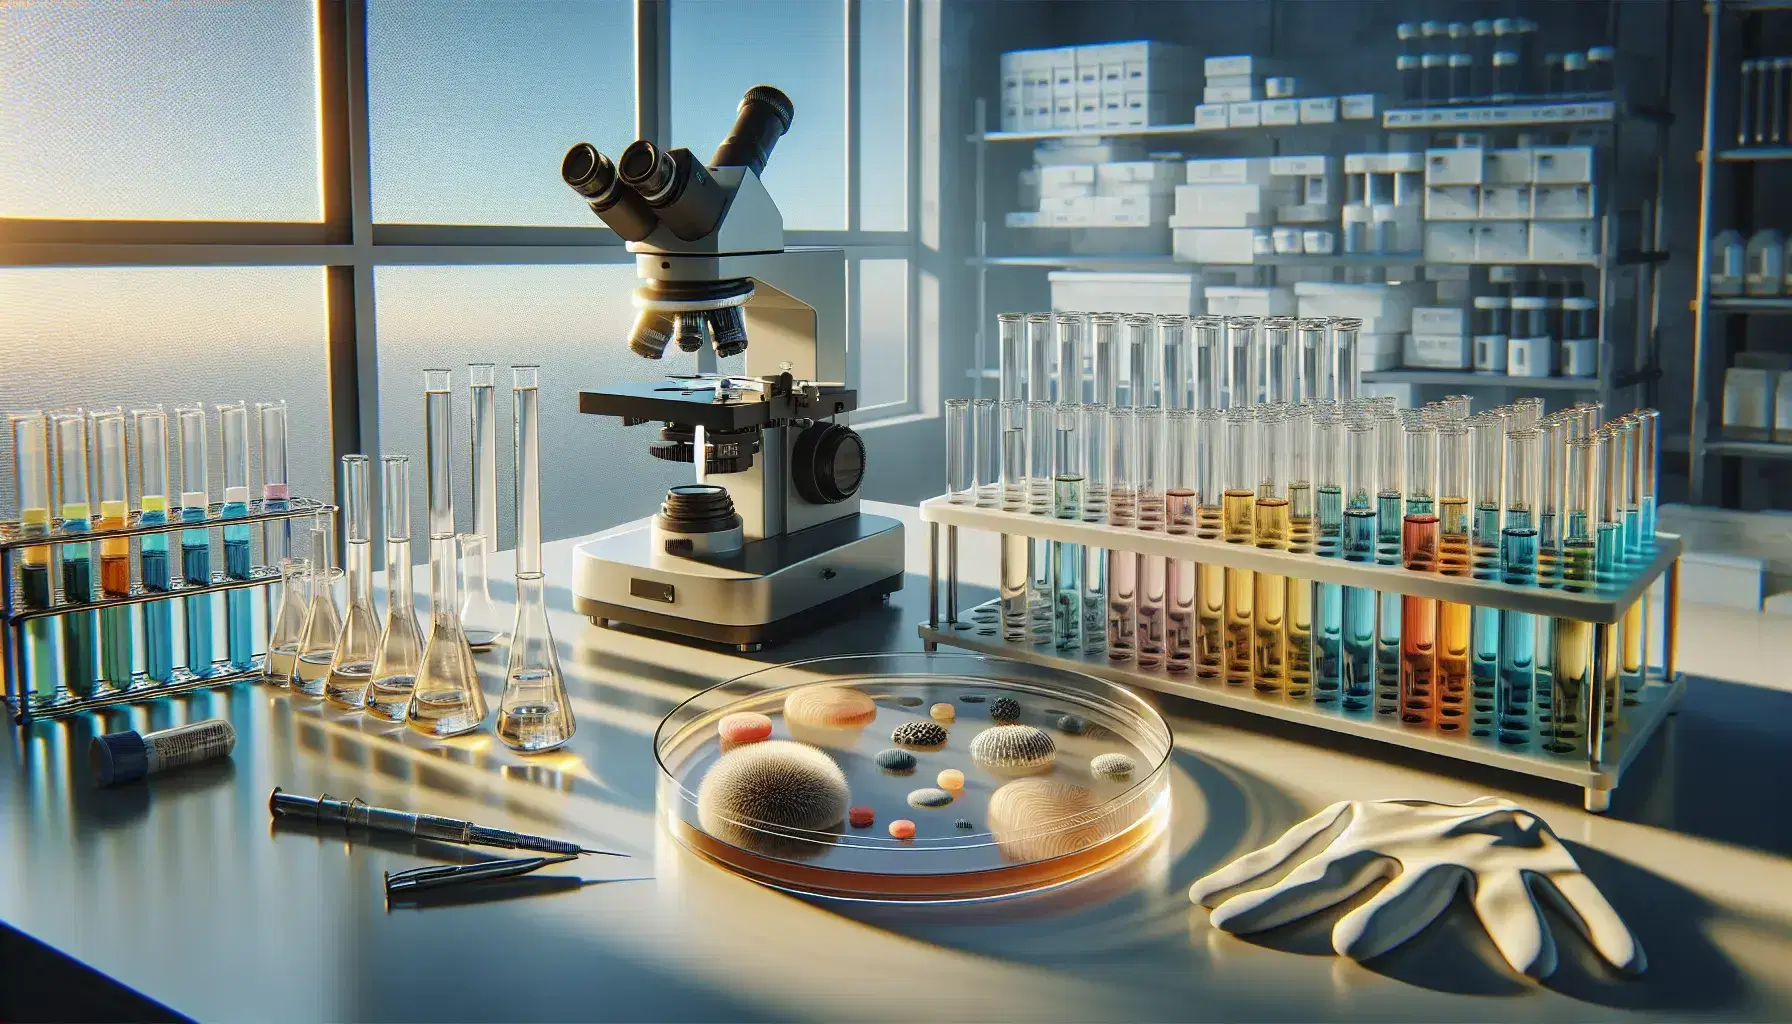 Microscopio electrónico en laboratorio de investigación biomédica con tubos de ensayo coloridos, placa de Petri con colonias bacterianas y guantes de látex, iluminados por luz natural.